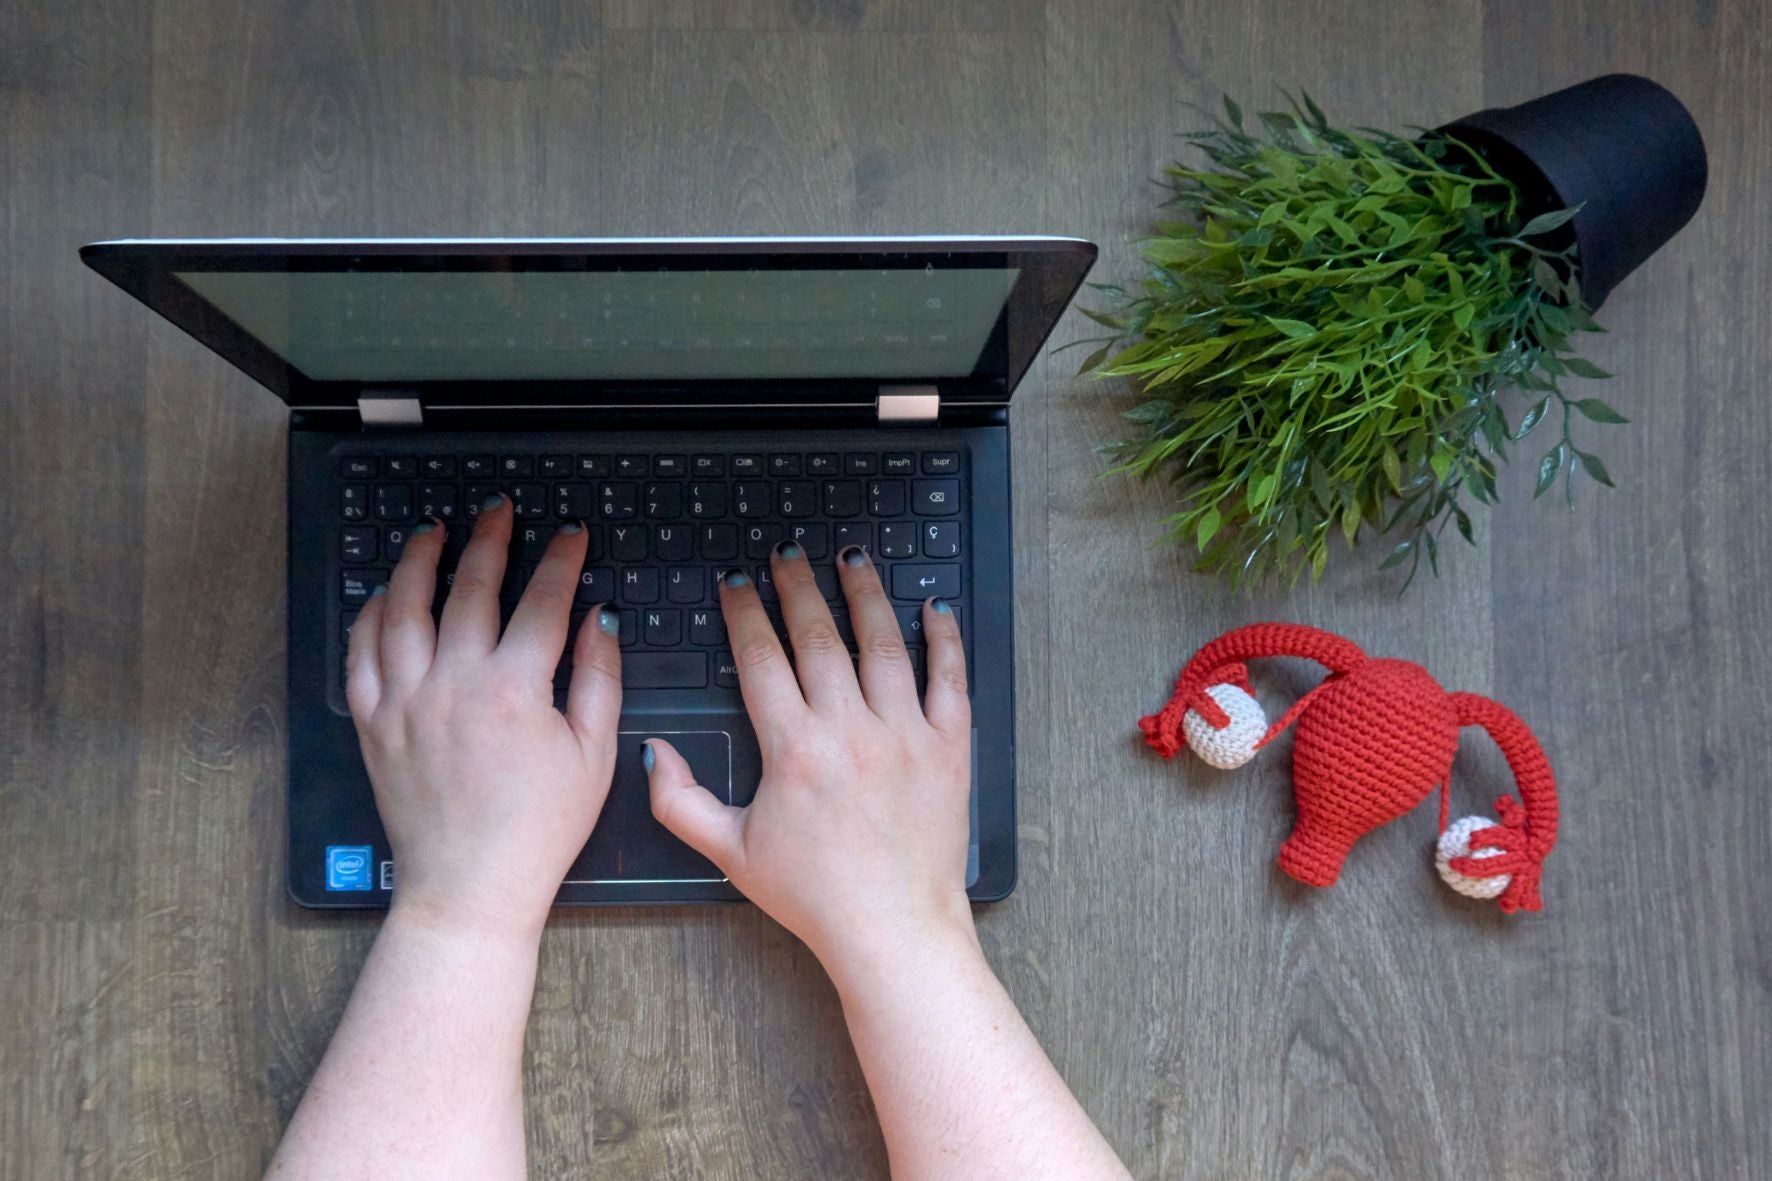 Deux mains au-dessus d’un clavier d’ordinateur portable avec un utérus au crochet déposé à côté.